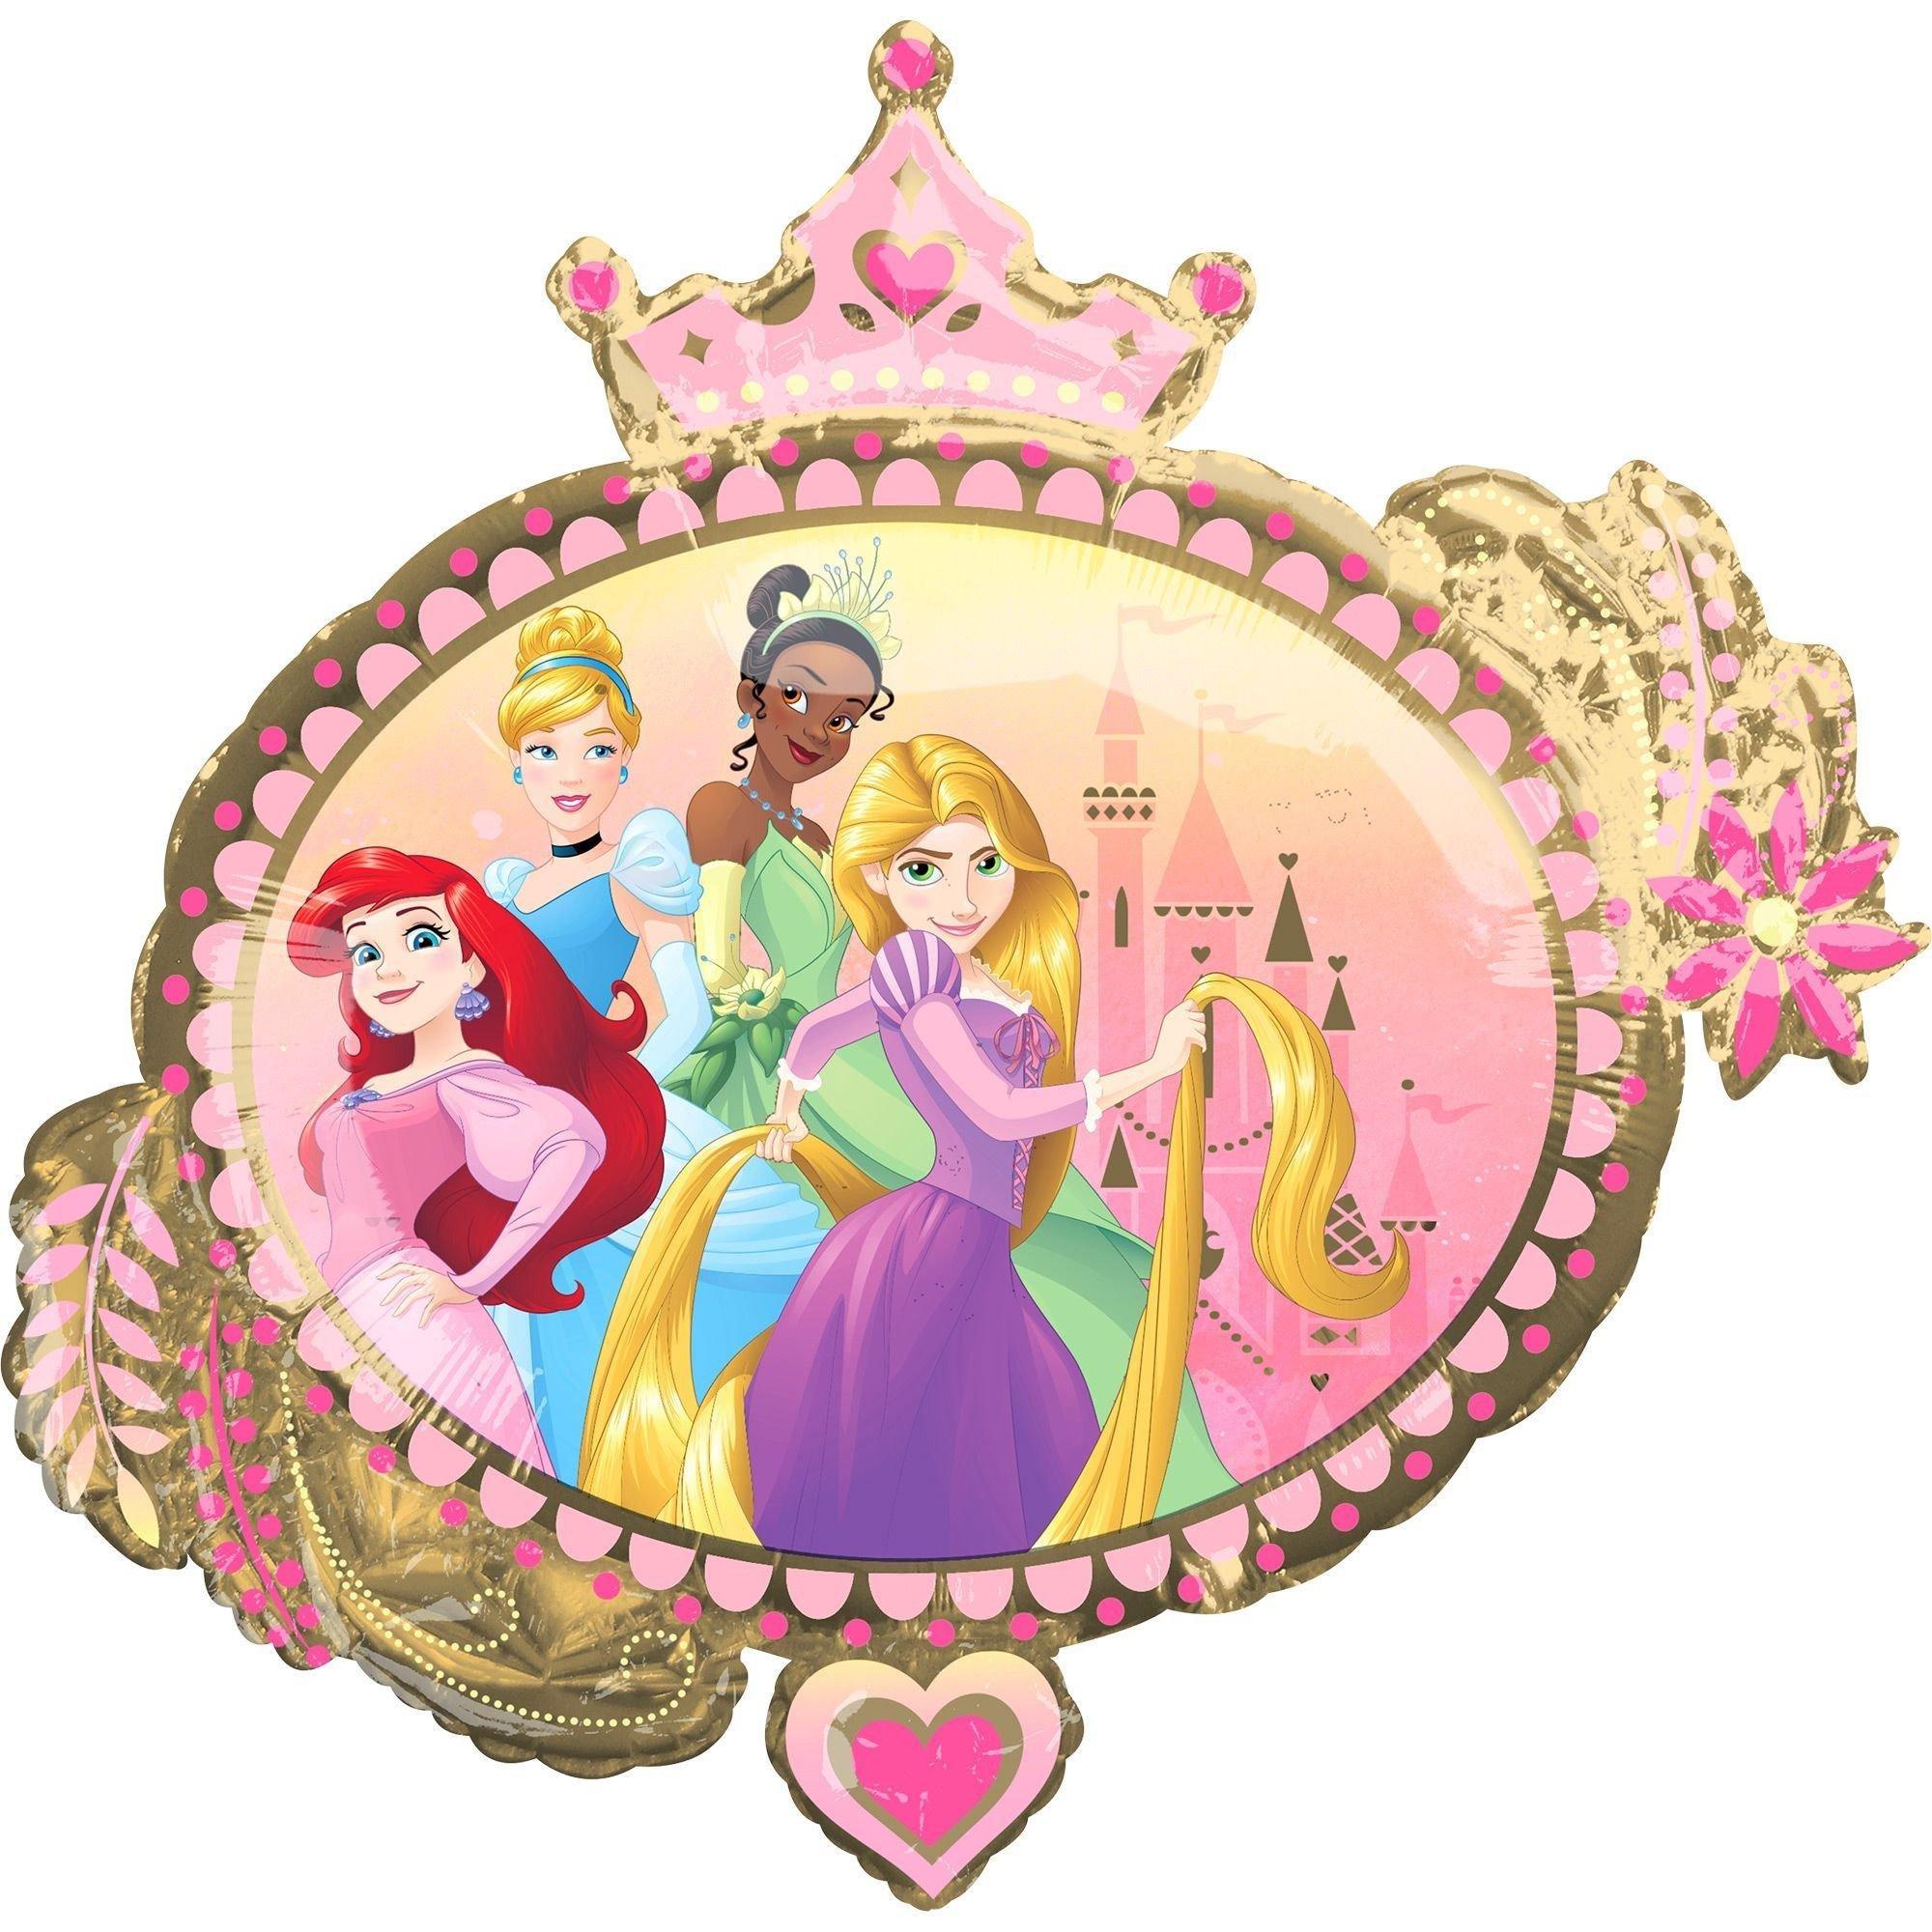 Bouquet de ballons anniversaire Disney Princesses - Happy Fiesta Lyon